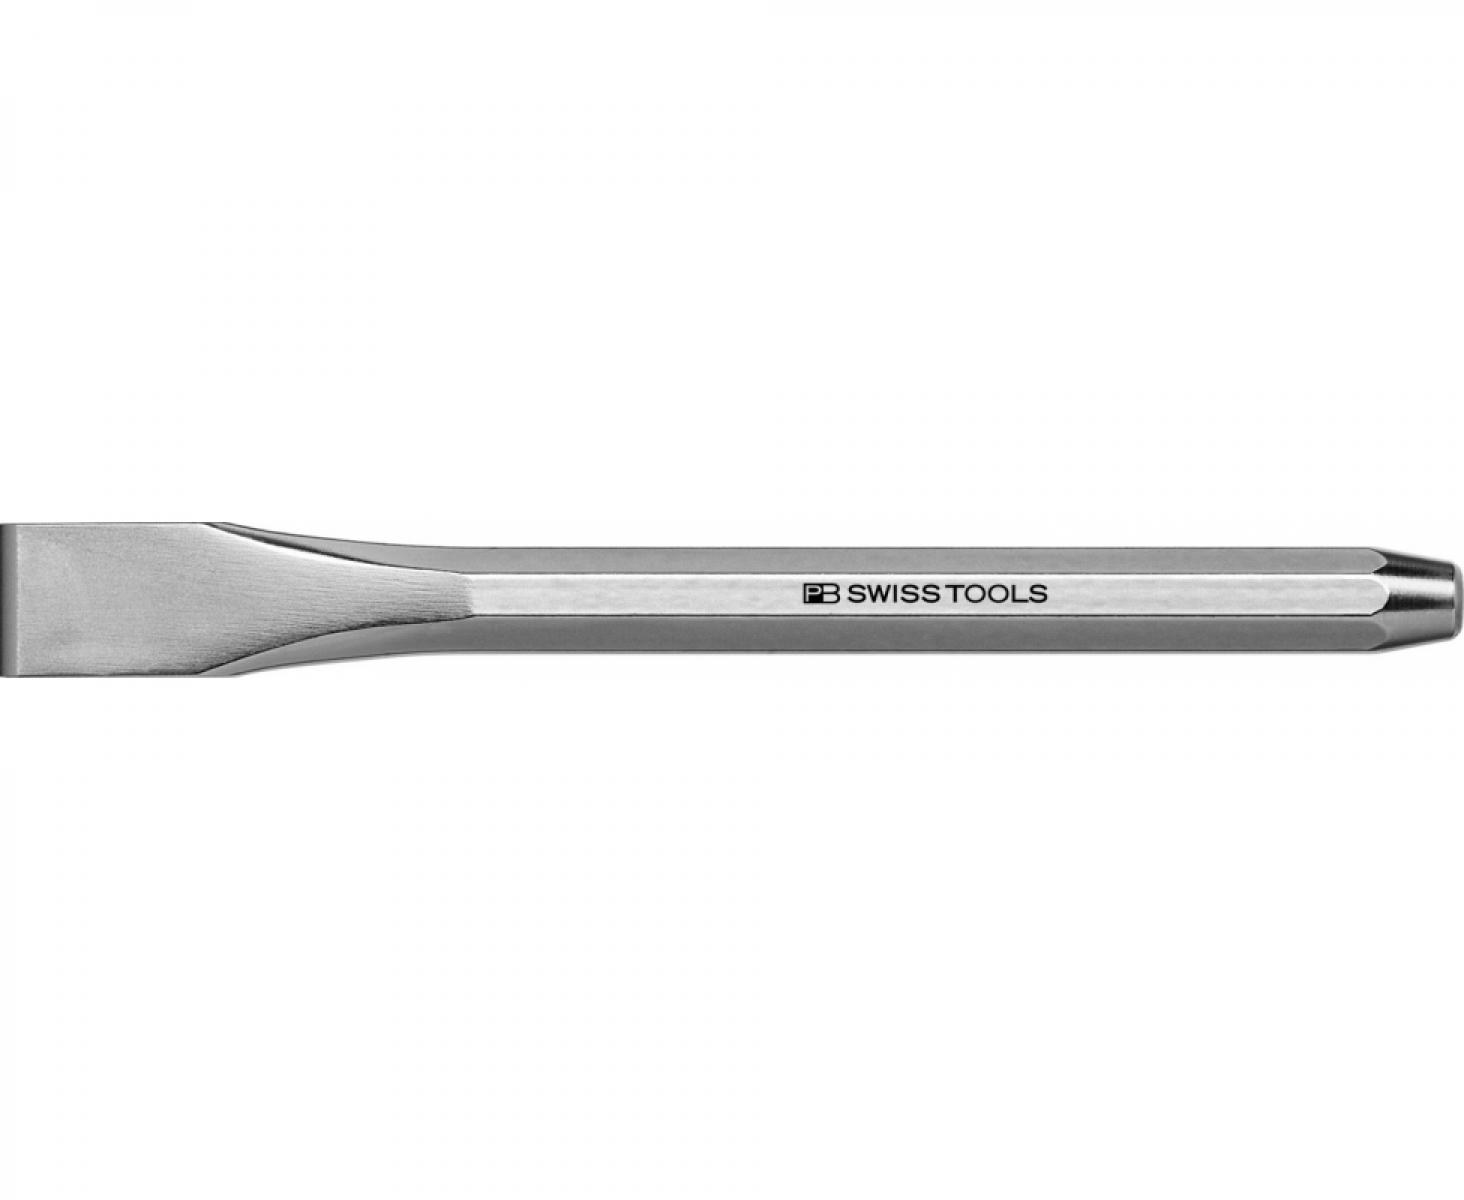 Долото восьмигранное плоское для металла 180 мм PB Swiss Tools PB 805.22